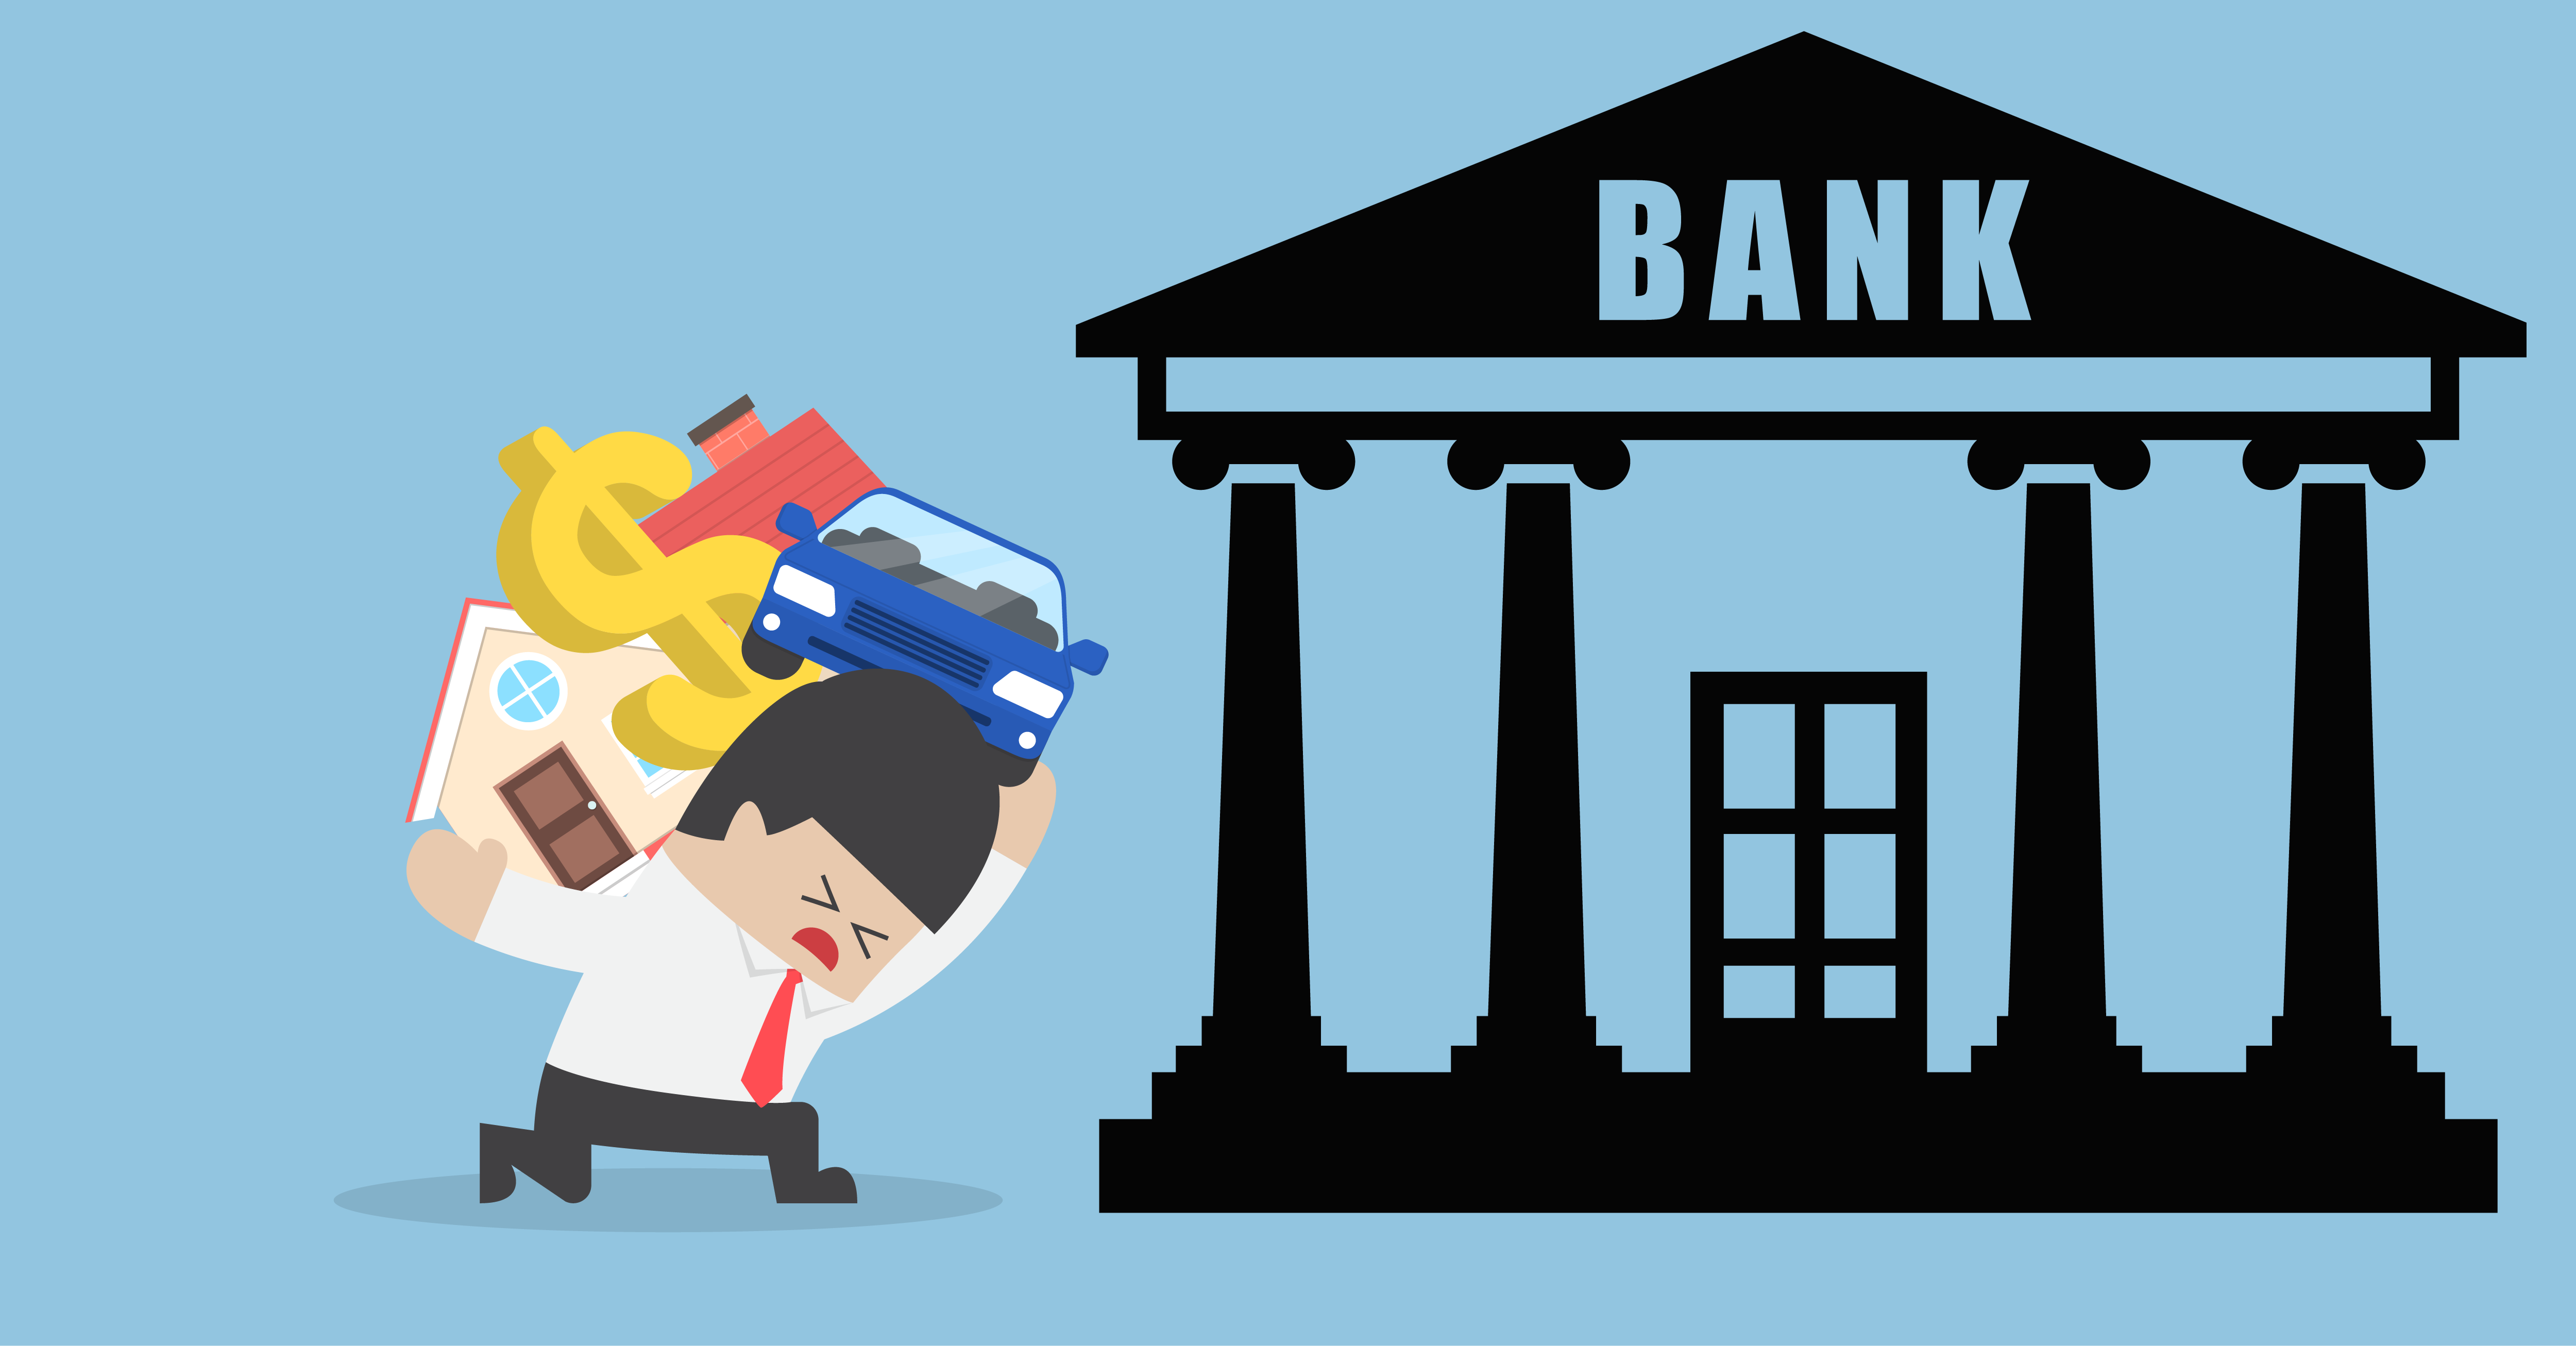 Банк иллюстрация. Банк картинка. Банк для презентации. Банк мультяшный.